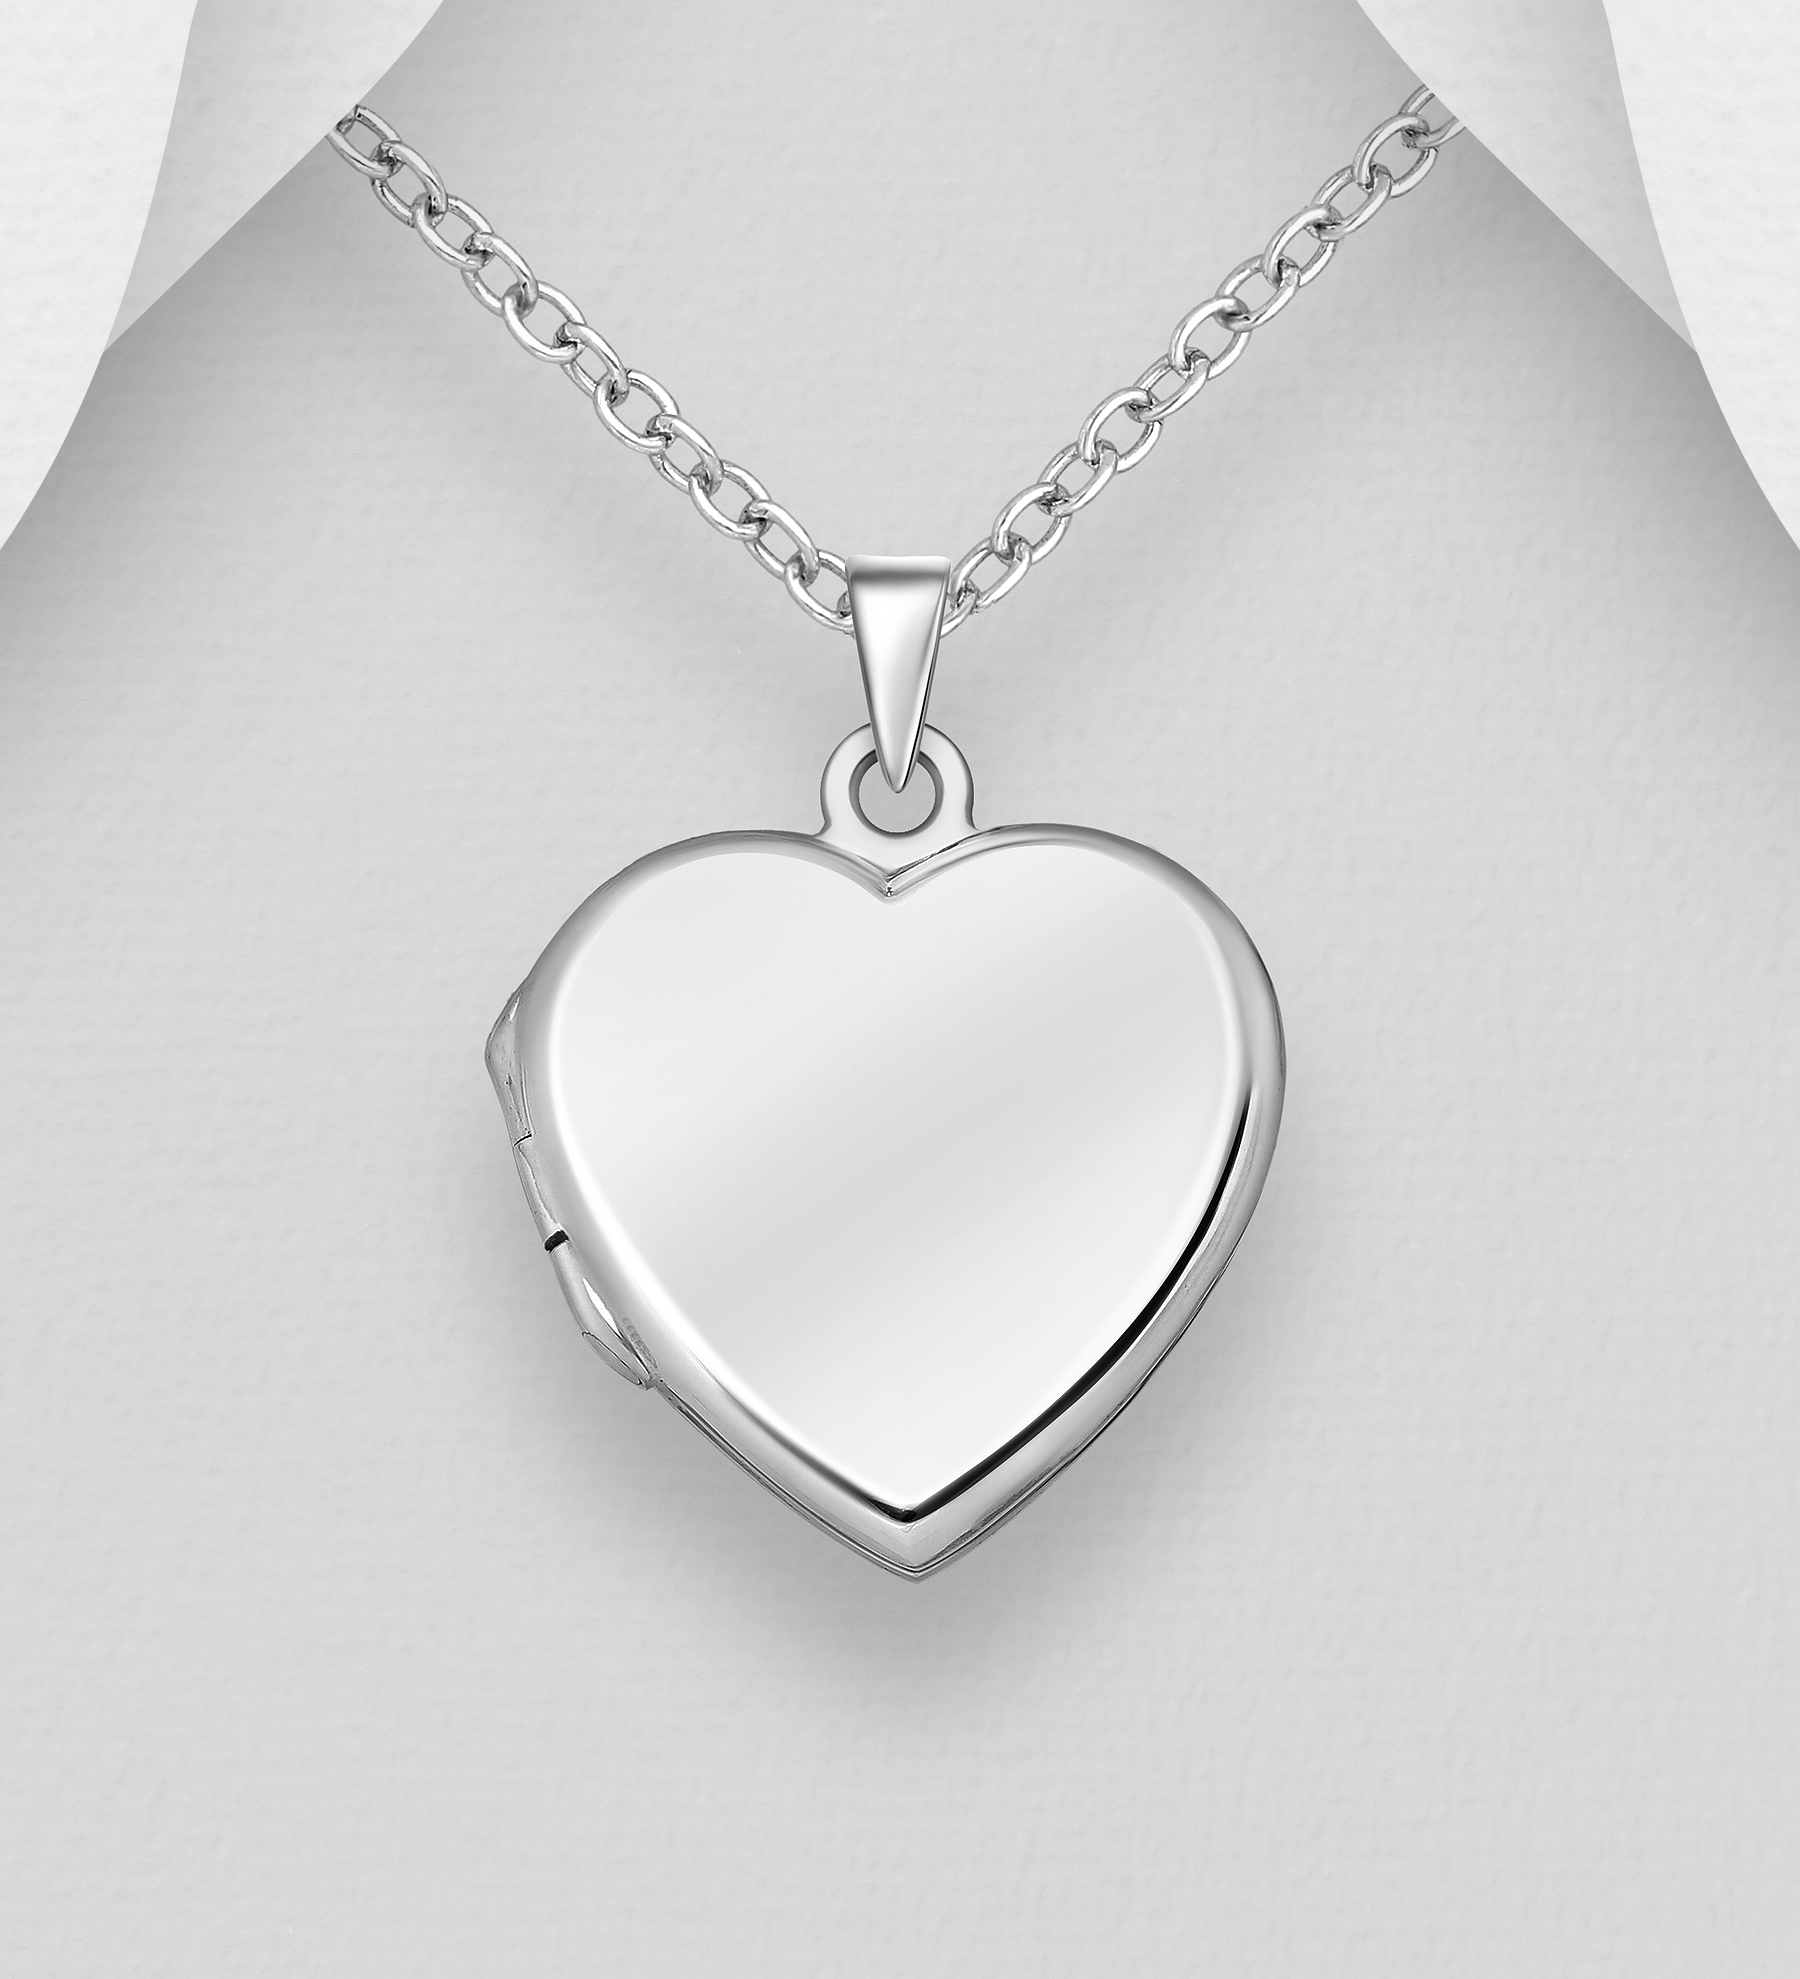 Silverhalsband öppningsbar Hjärtberlock - vackert halsband till tjej/ dam i äkta 925 sterling silver